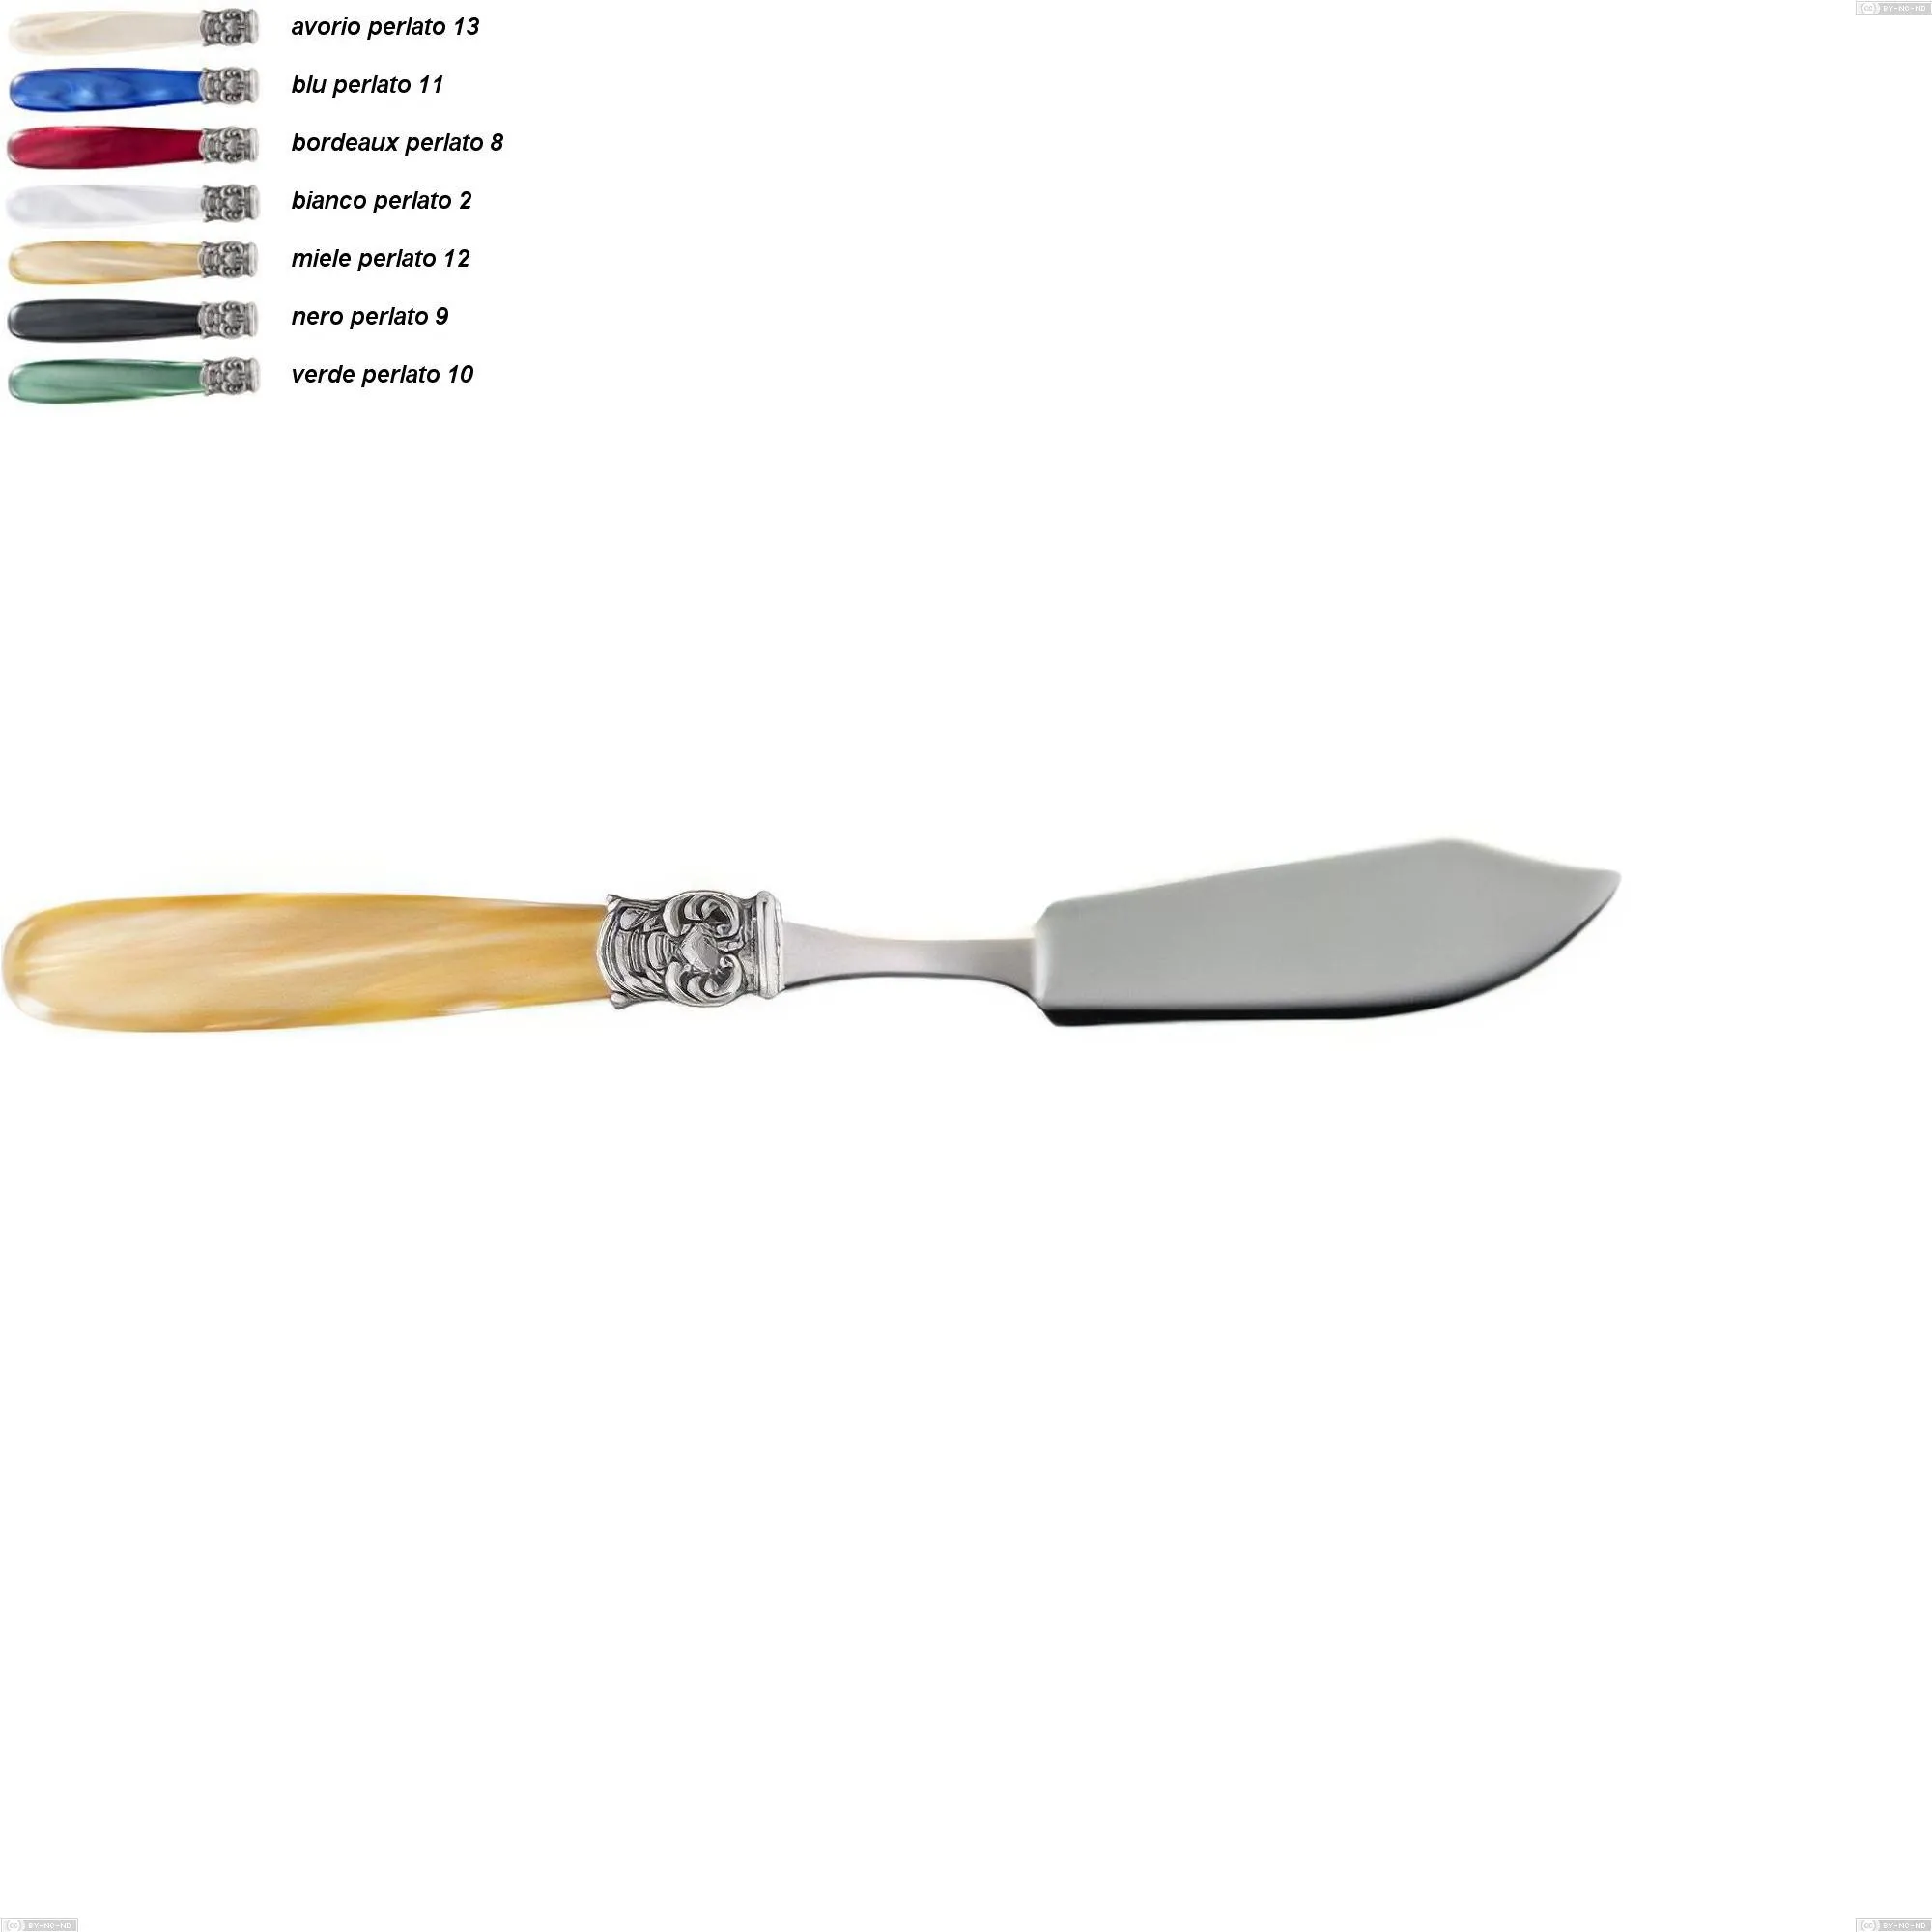 Coltello pesce mona lisa, Acciaio 18/10 AISI 304 Lucido manicatura acrilico perlato, lunghezza 215 mm